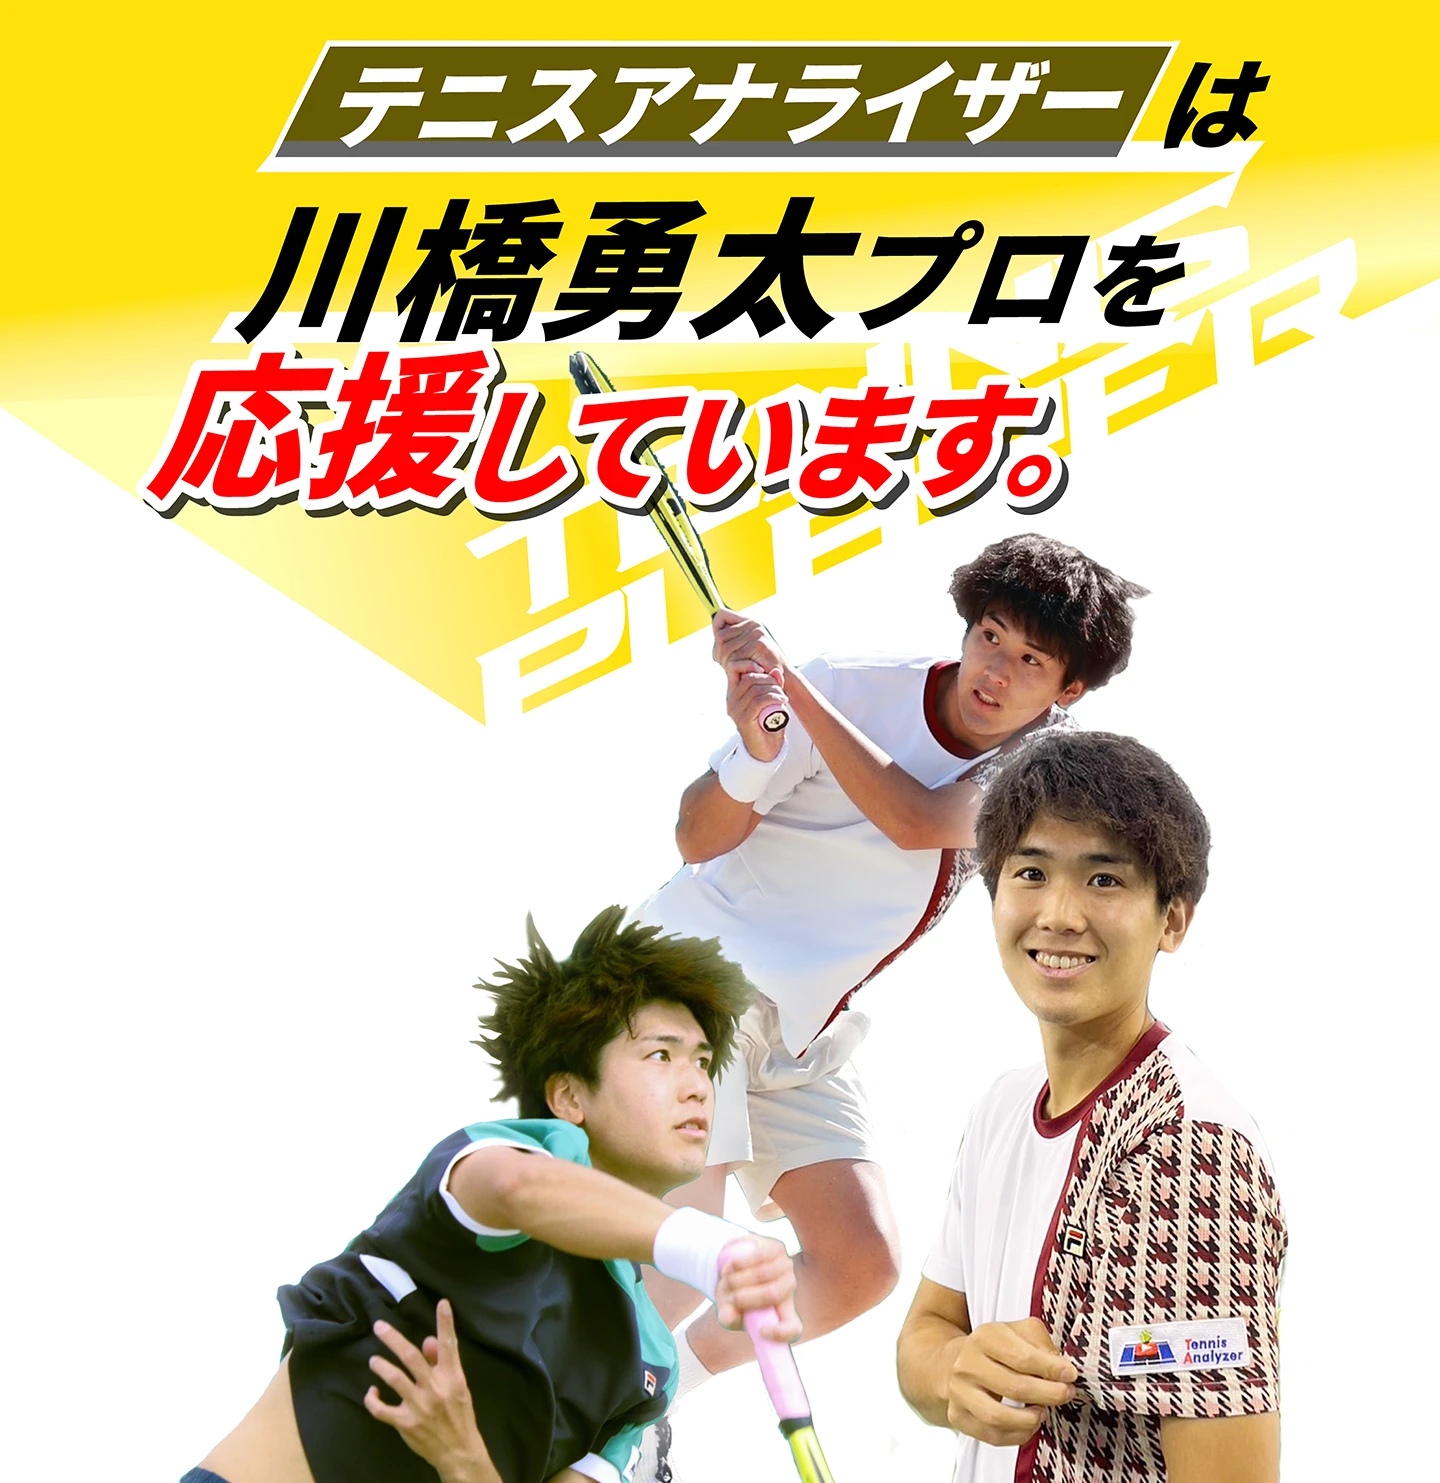 テニスアナライザーは川橋勇太プロを応援しています。